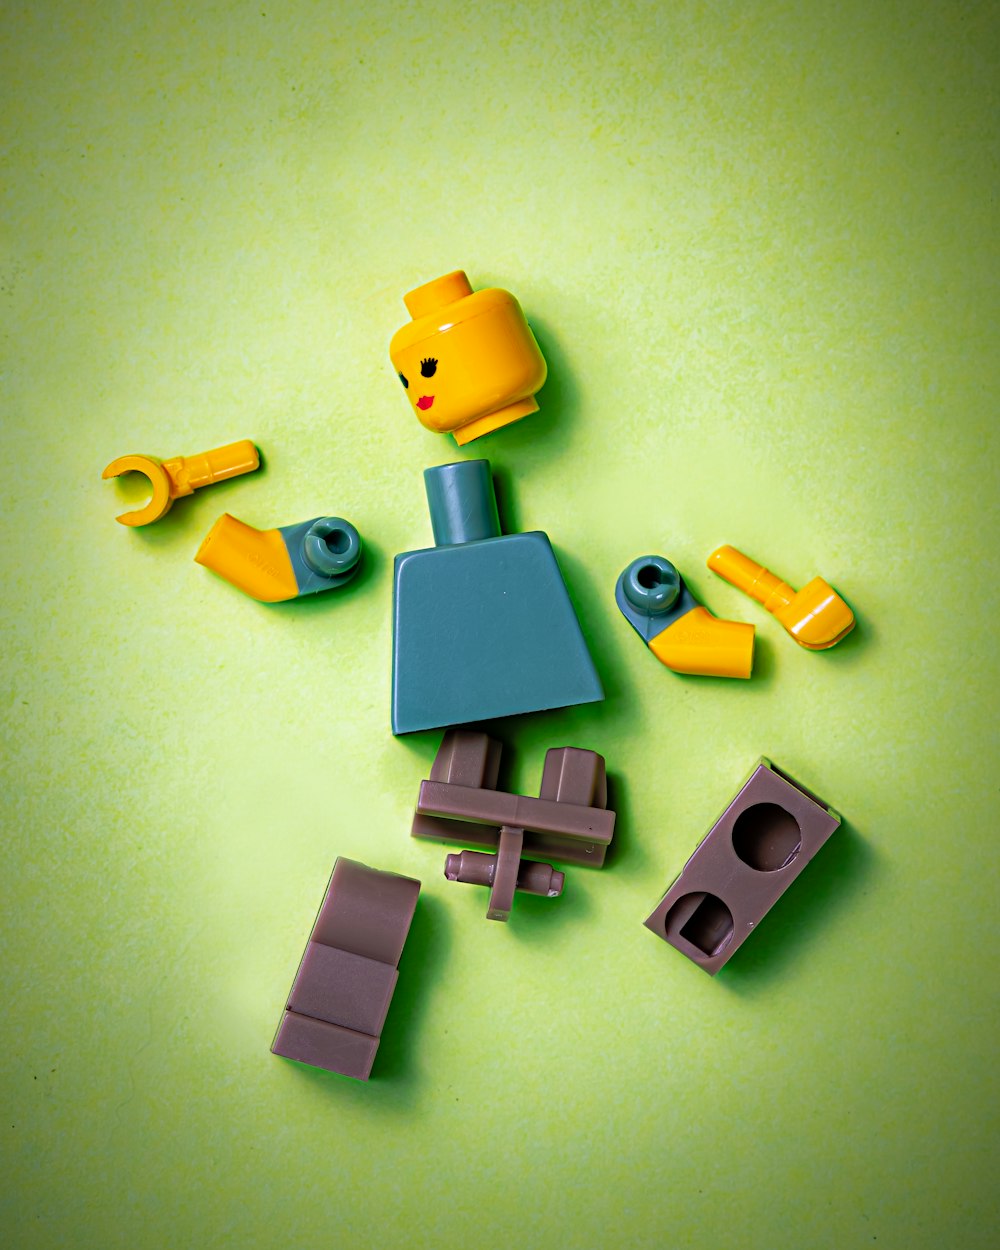 Muñeco Lego (3 piezas)